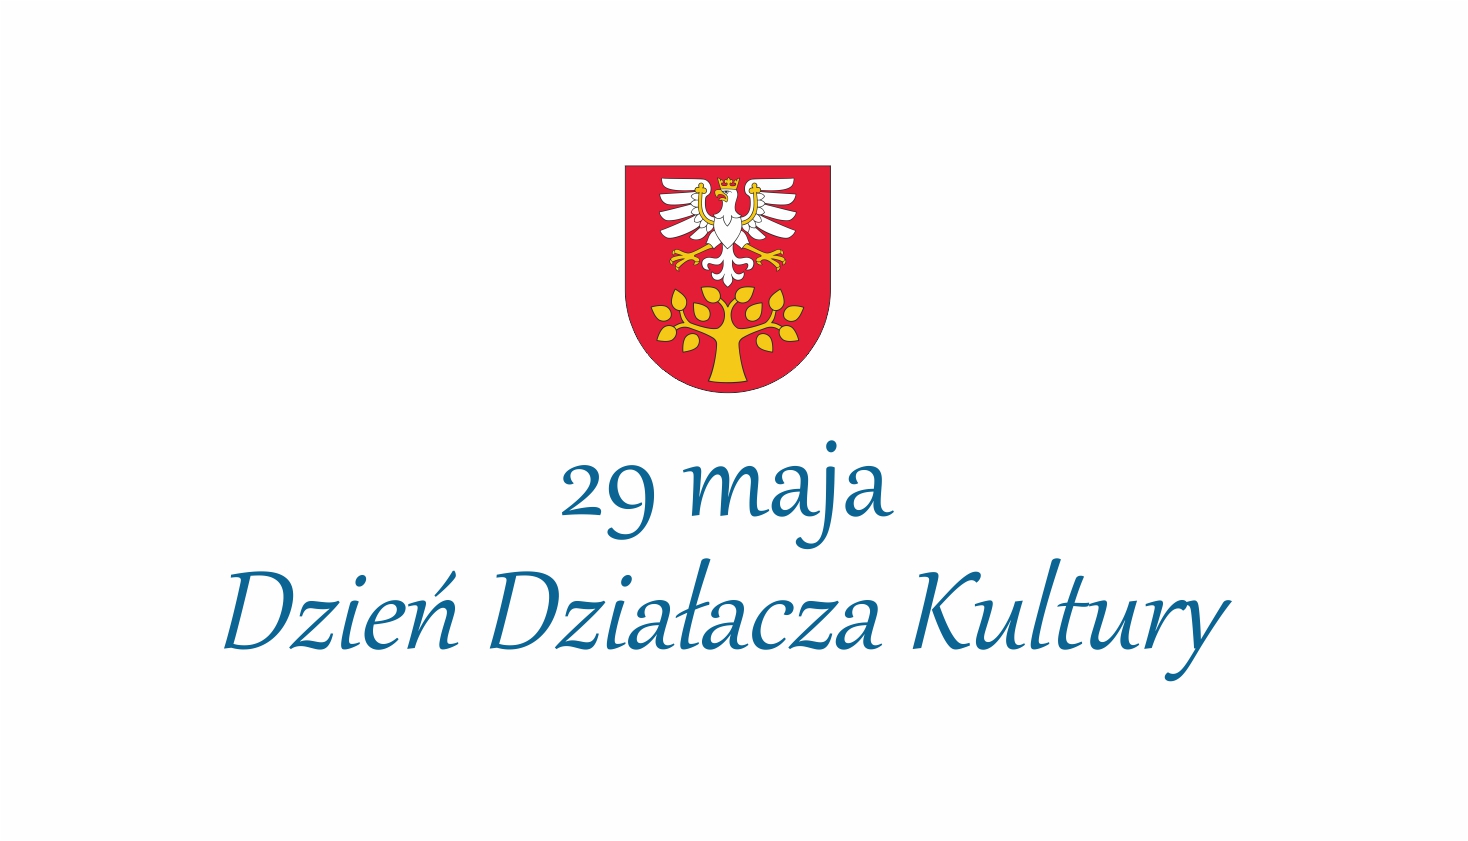 29 maja - ogólnopolski dzień działacza kultury - plakat informacyjny z logo powiatu